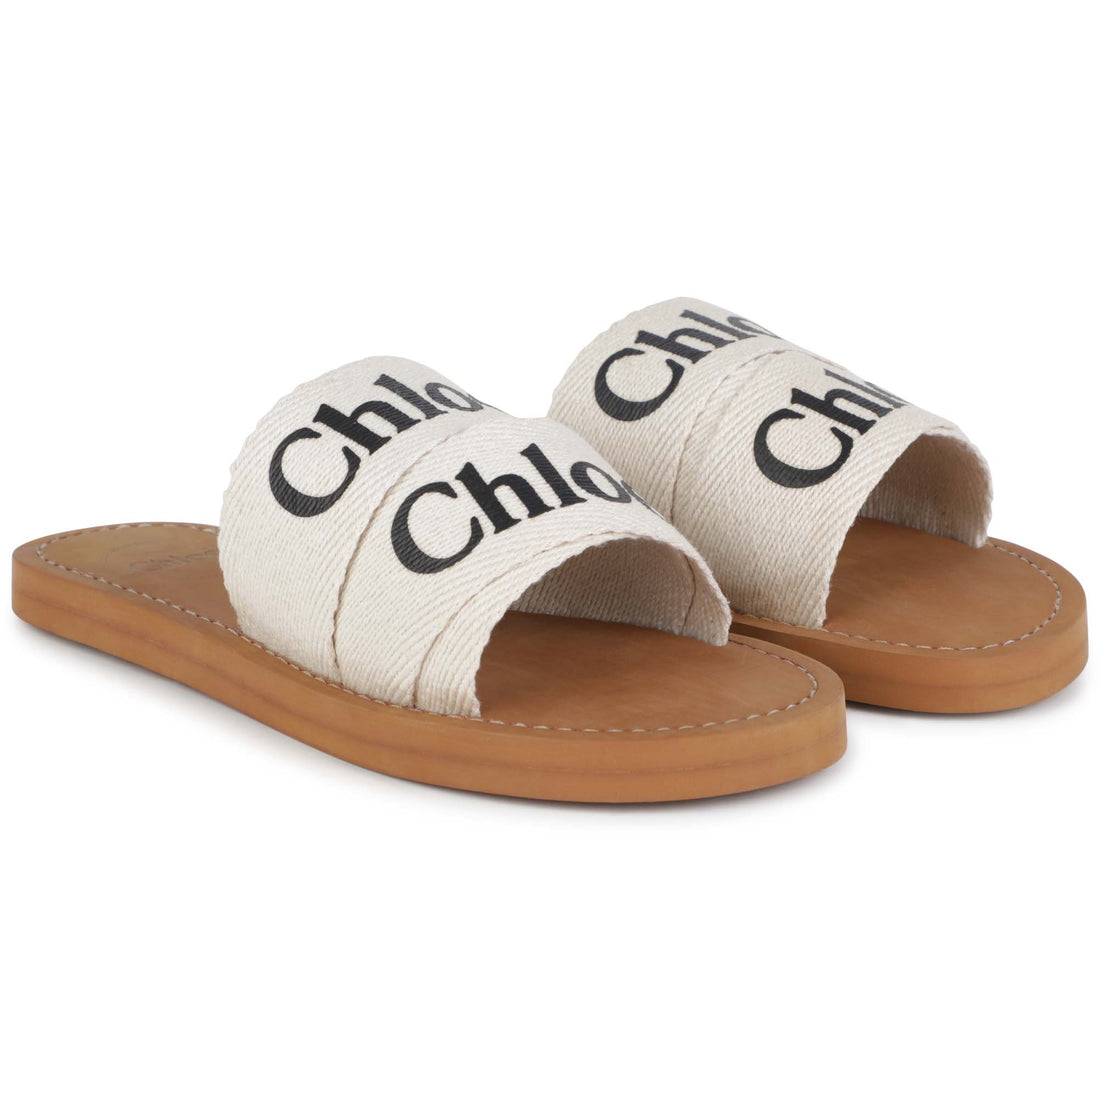 Chloe Aqua Slides Style: C19174